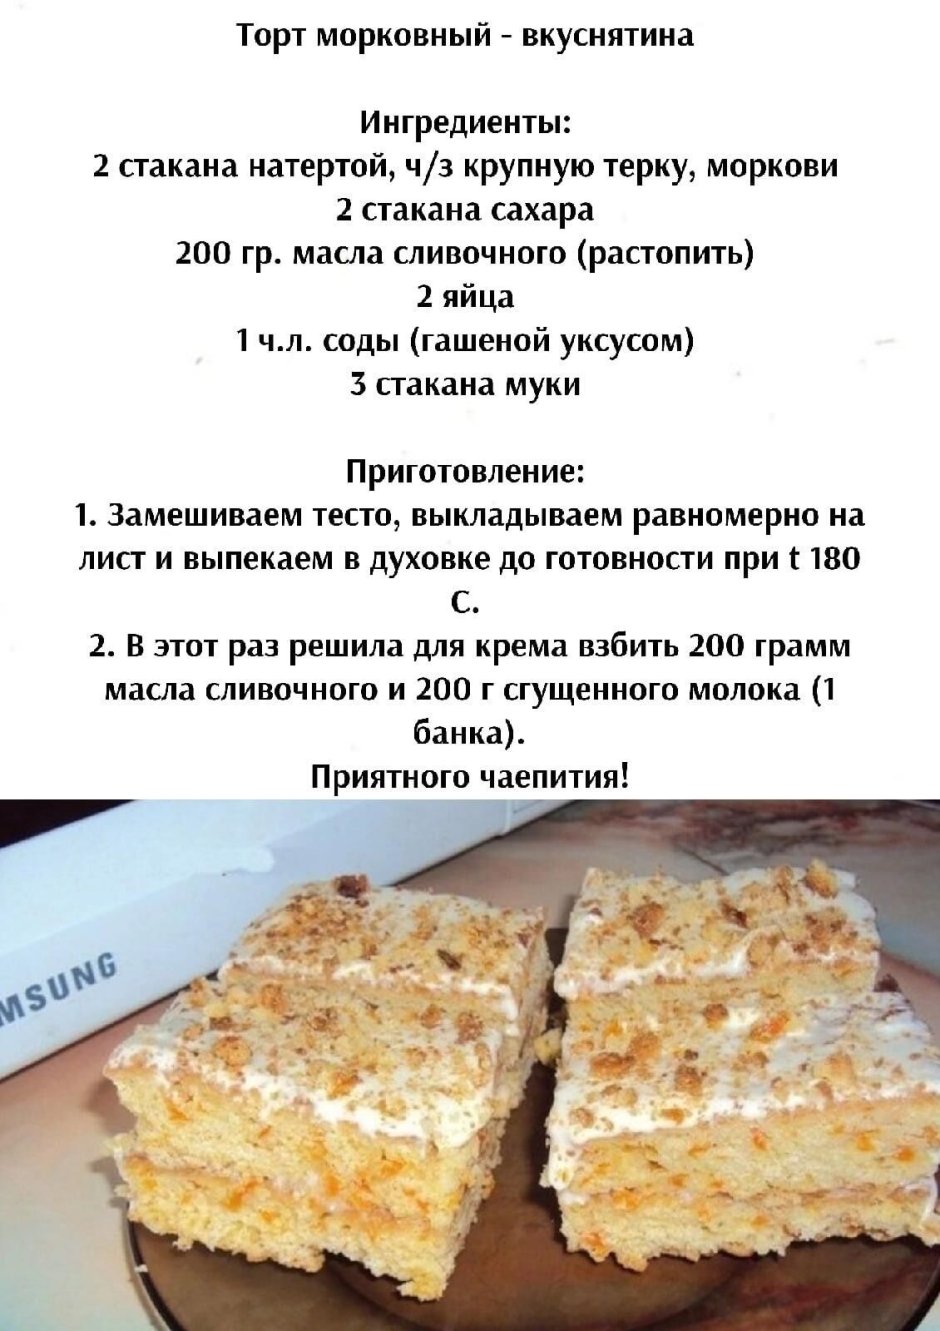 Морковный торт рецепт из журнала